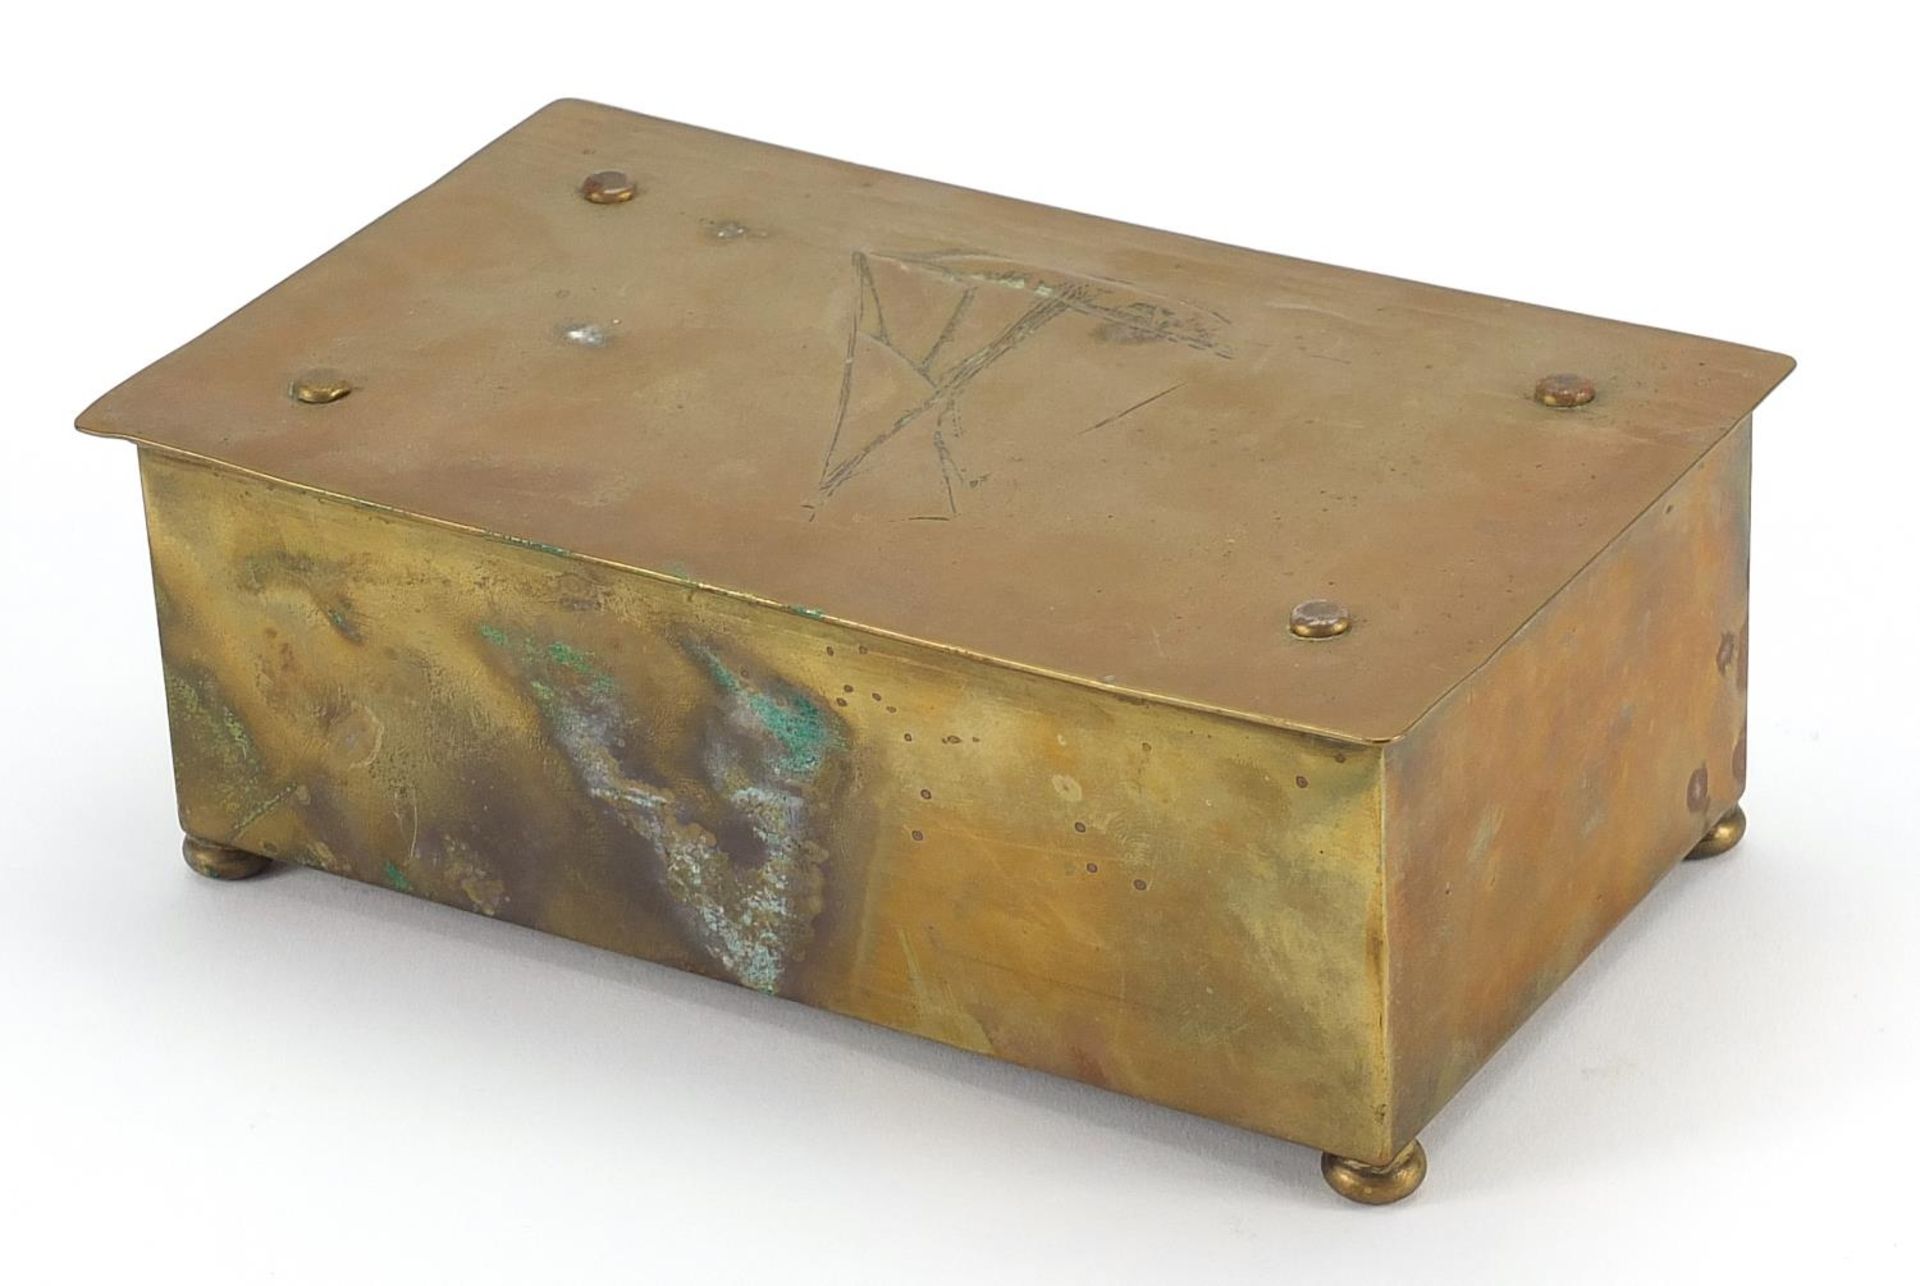 WMF, German Art Nouveau brass casket embossed with a sailing ship, 7cm H x 19cm W x 11.5cm D - Image 2 of 4